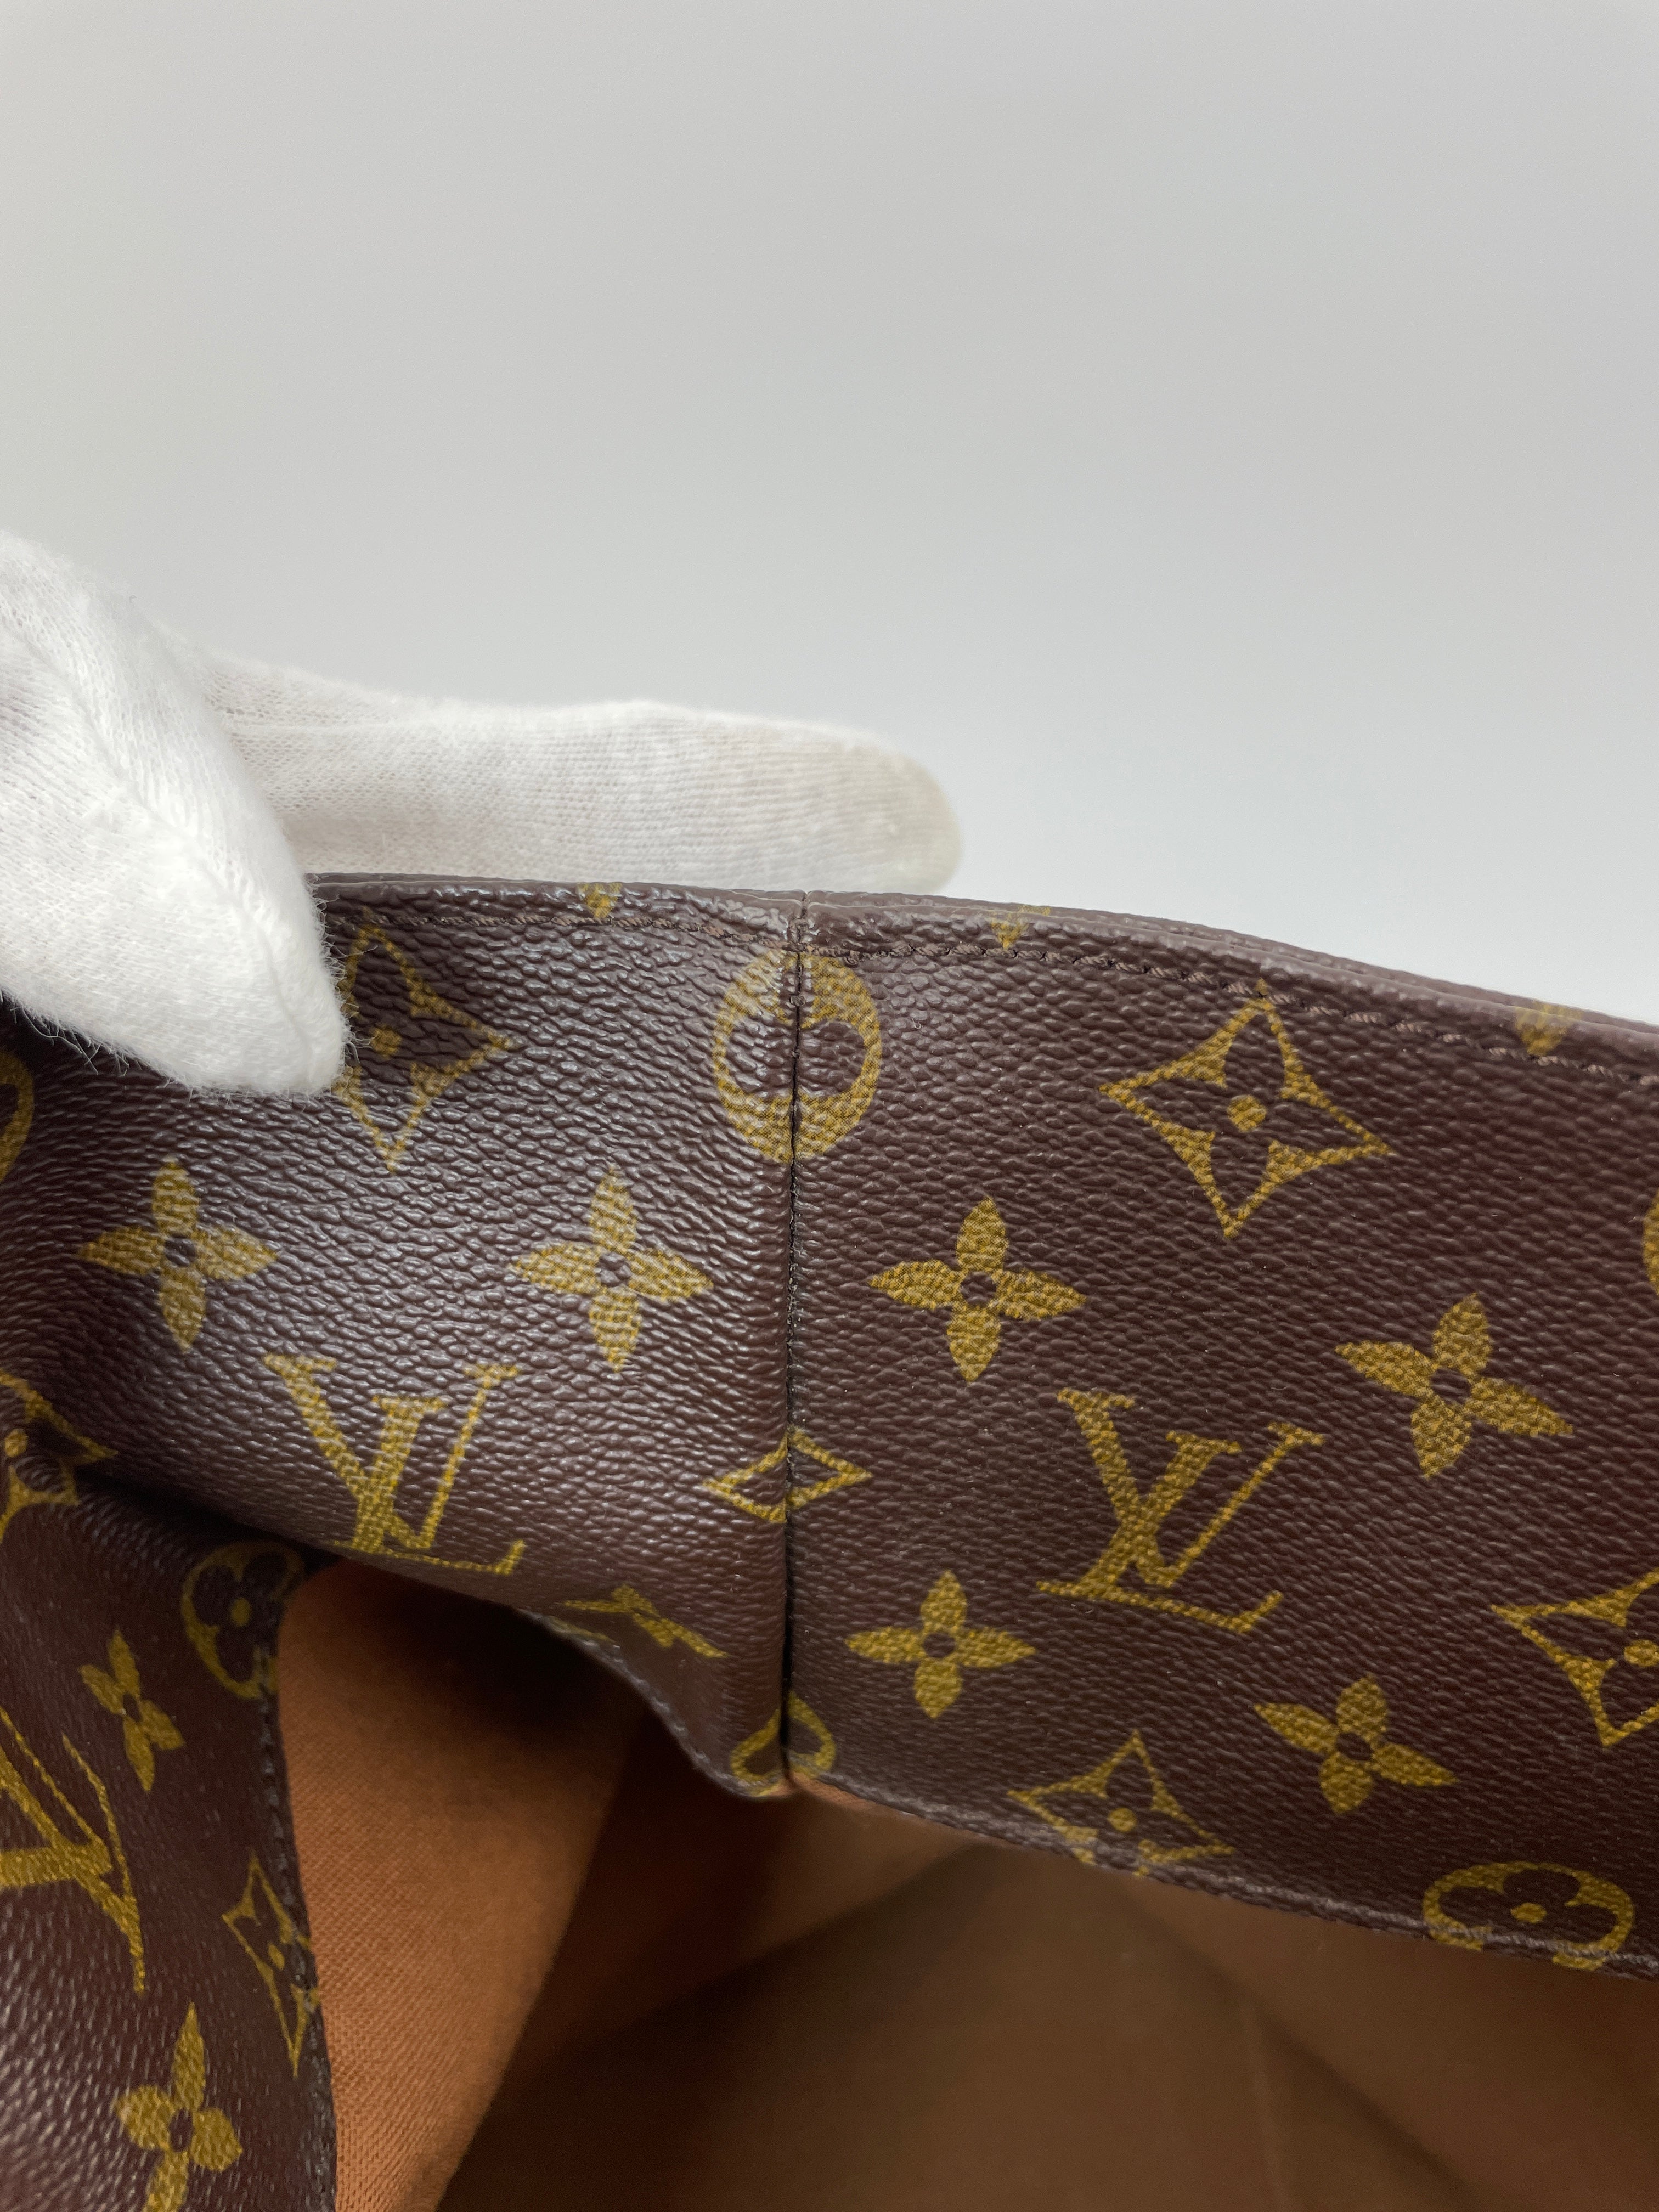 Louis Vuitton Cabas Alto Shoulder Tote Bag (6173)